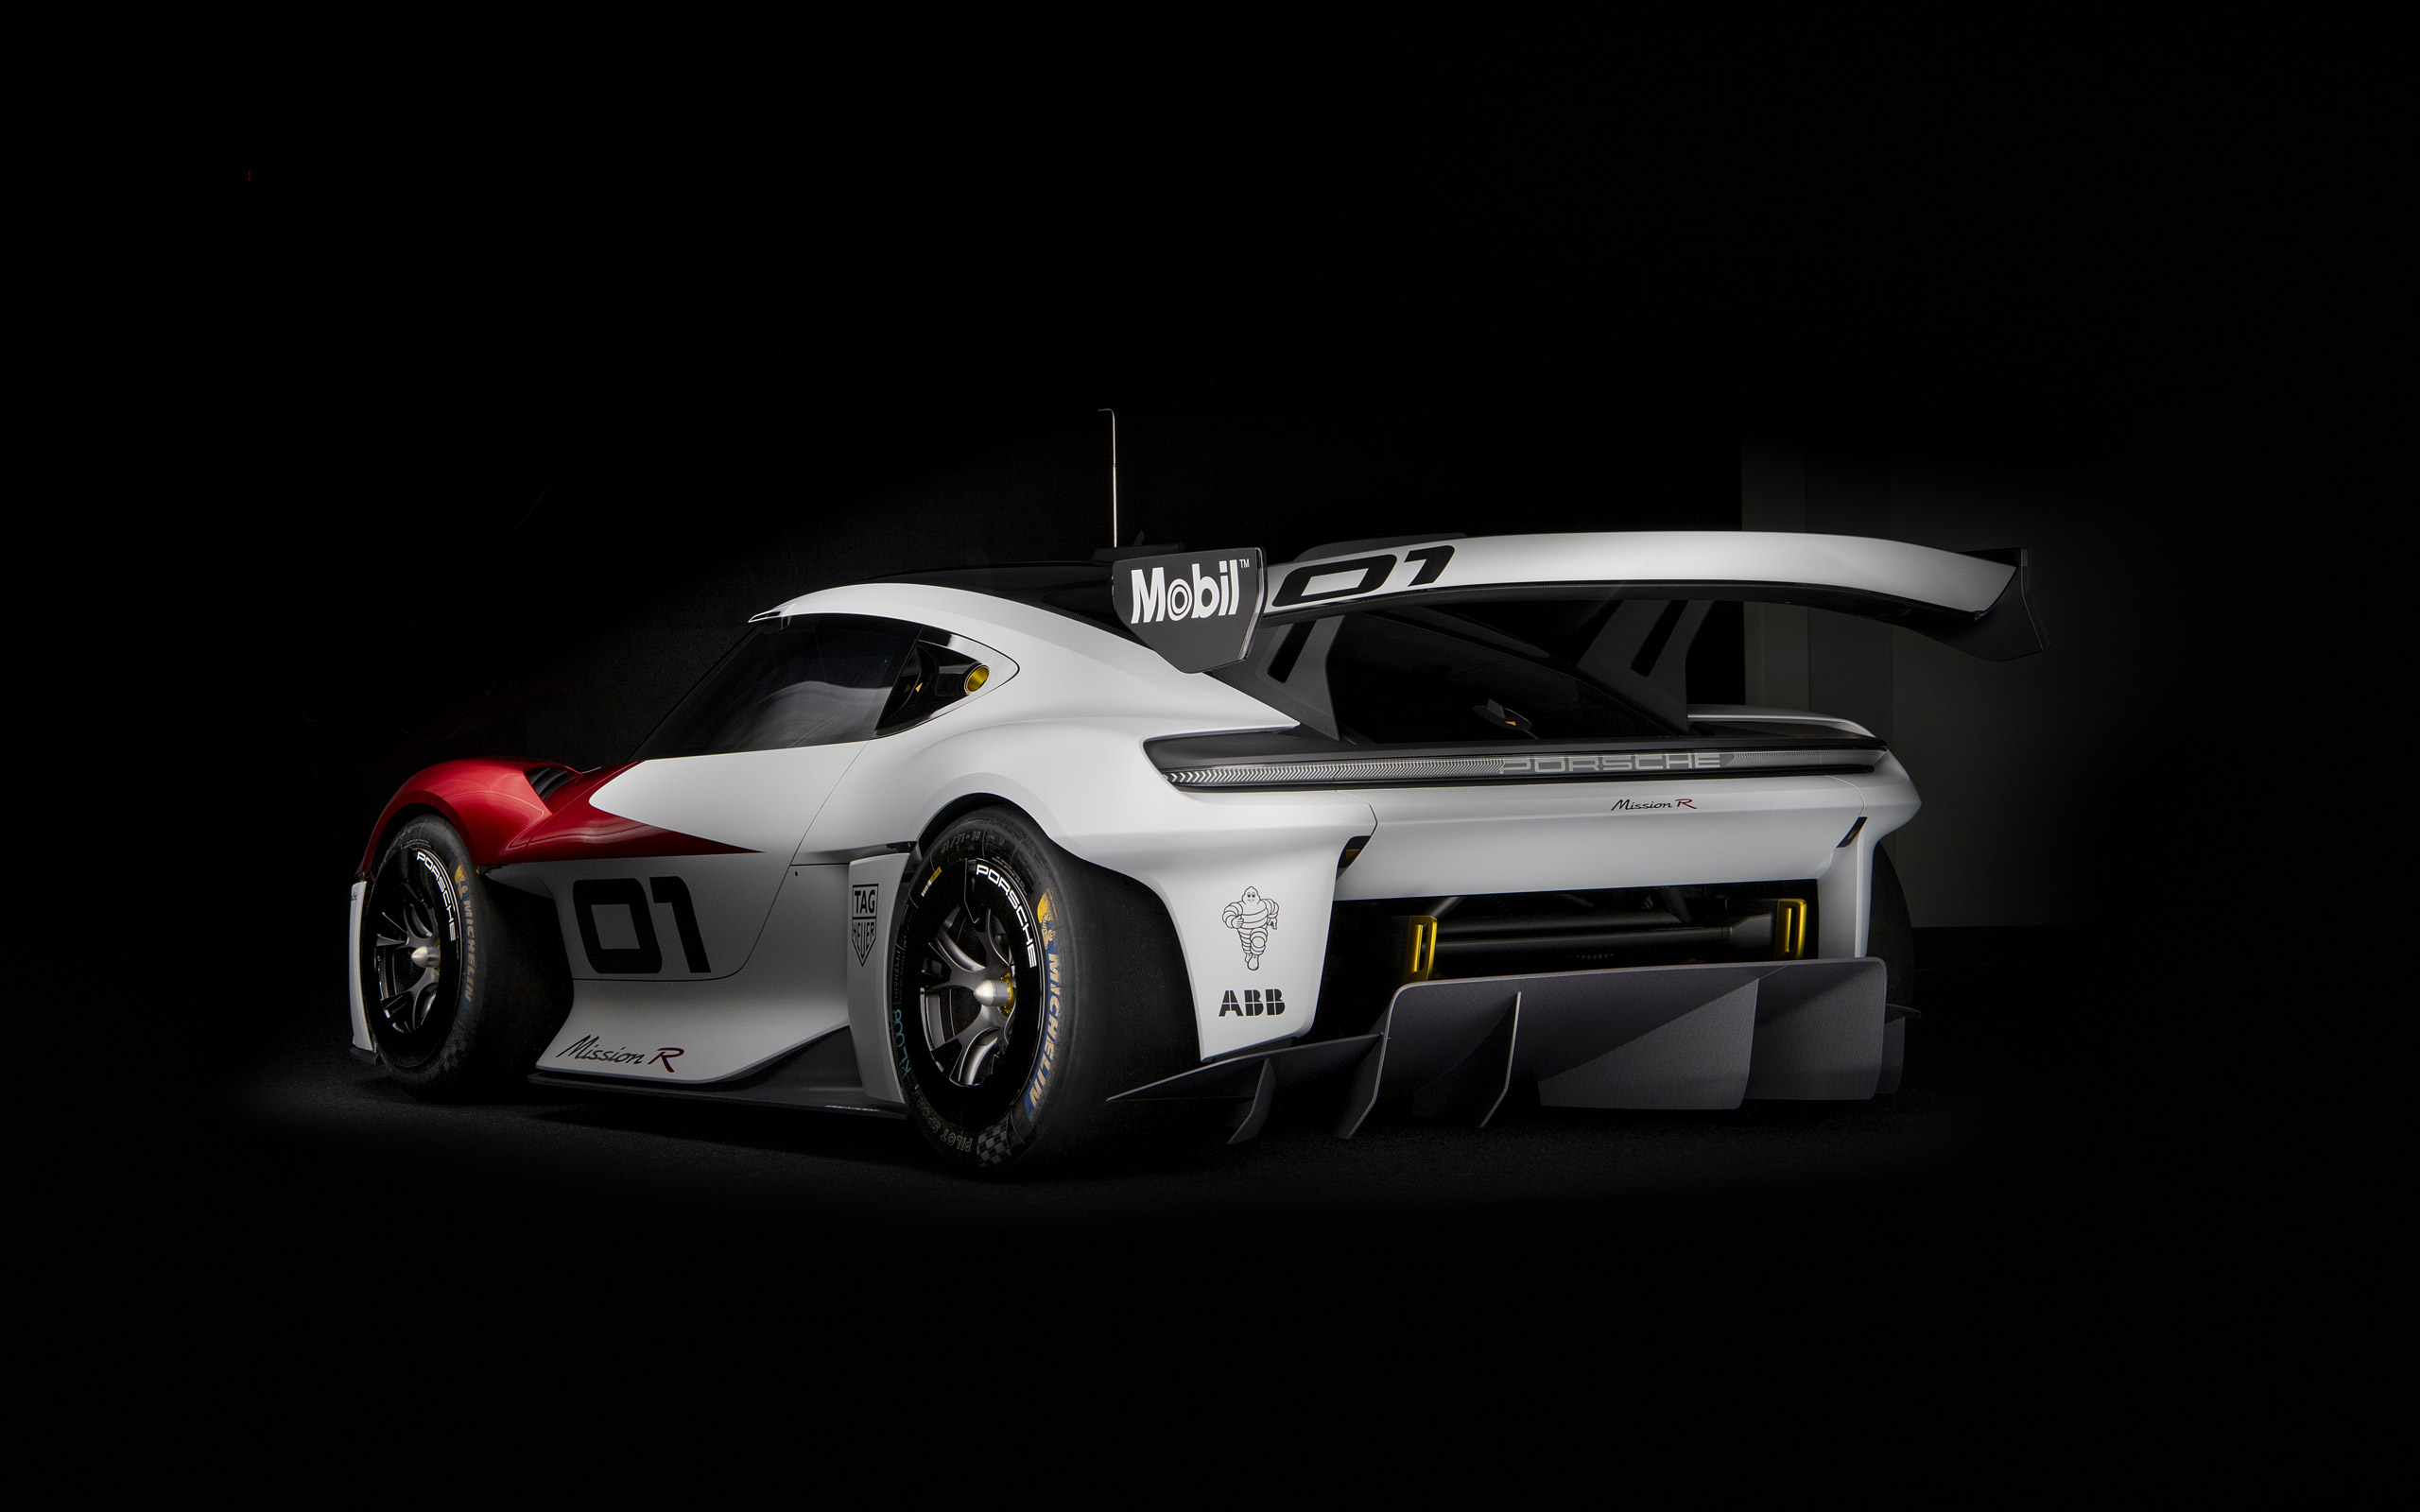  2021 Porsche Mission R Concept Wallpaper.